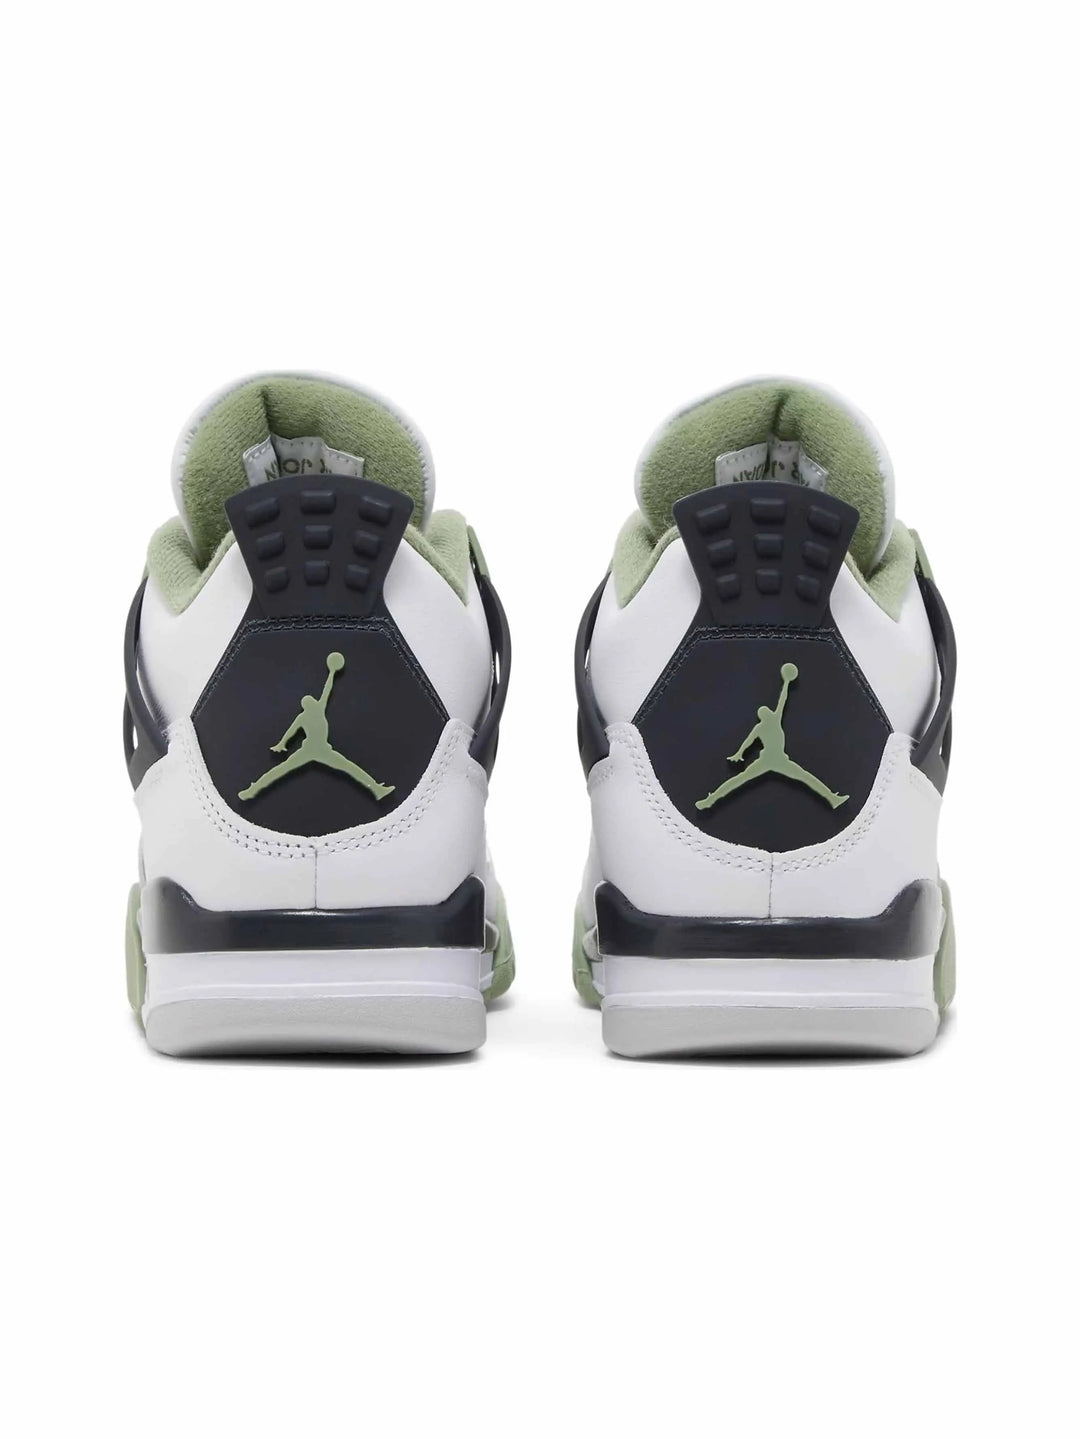 Nike Air Jordan 4 Retro Seafoam (W) - Prior